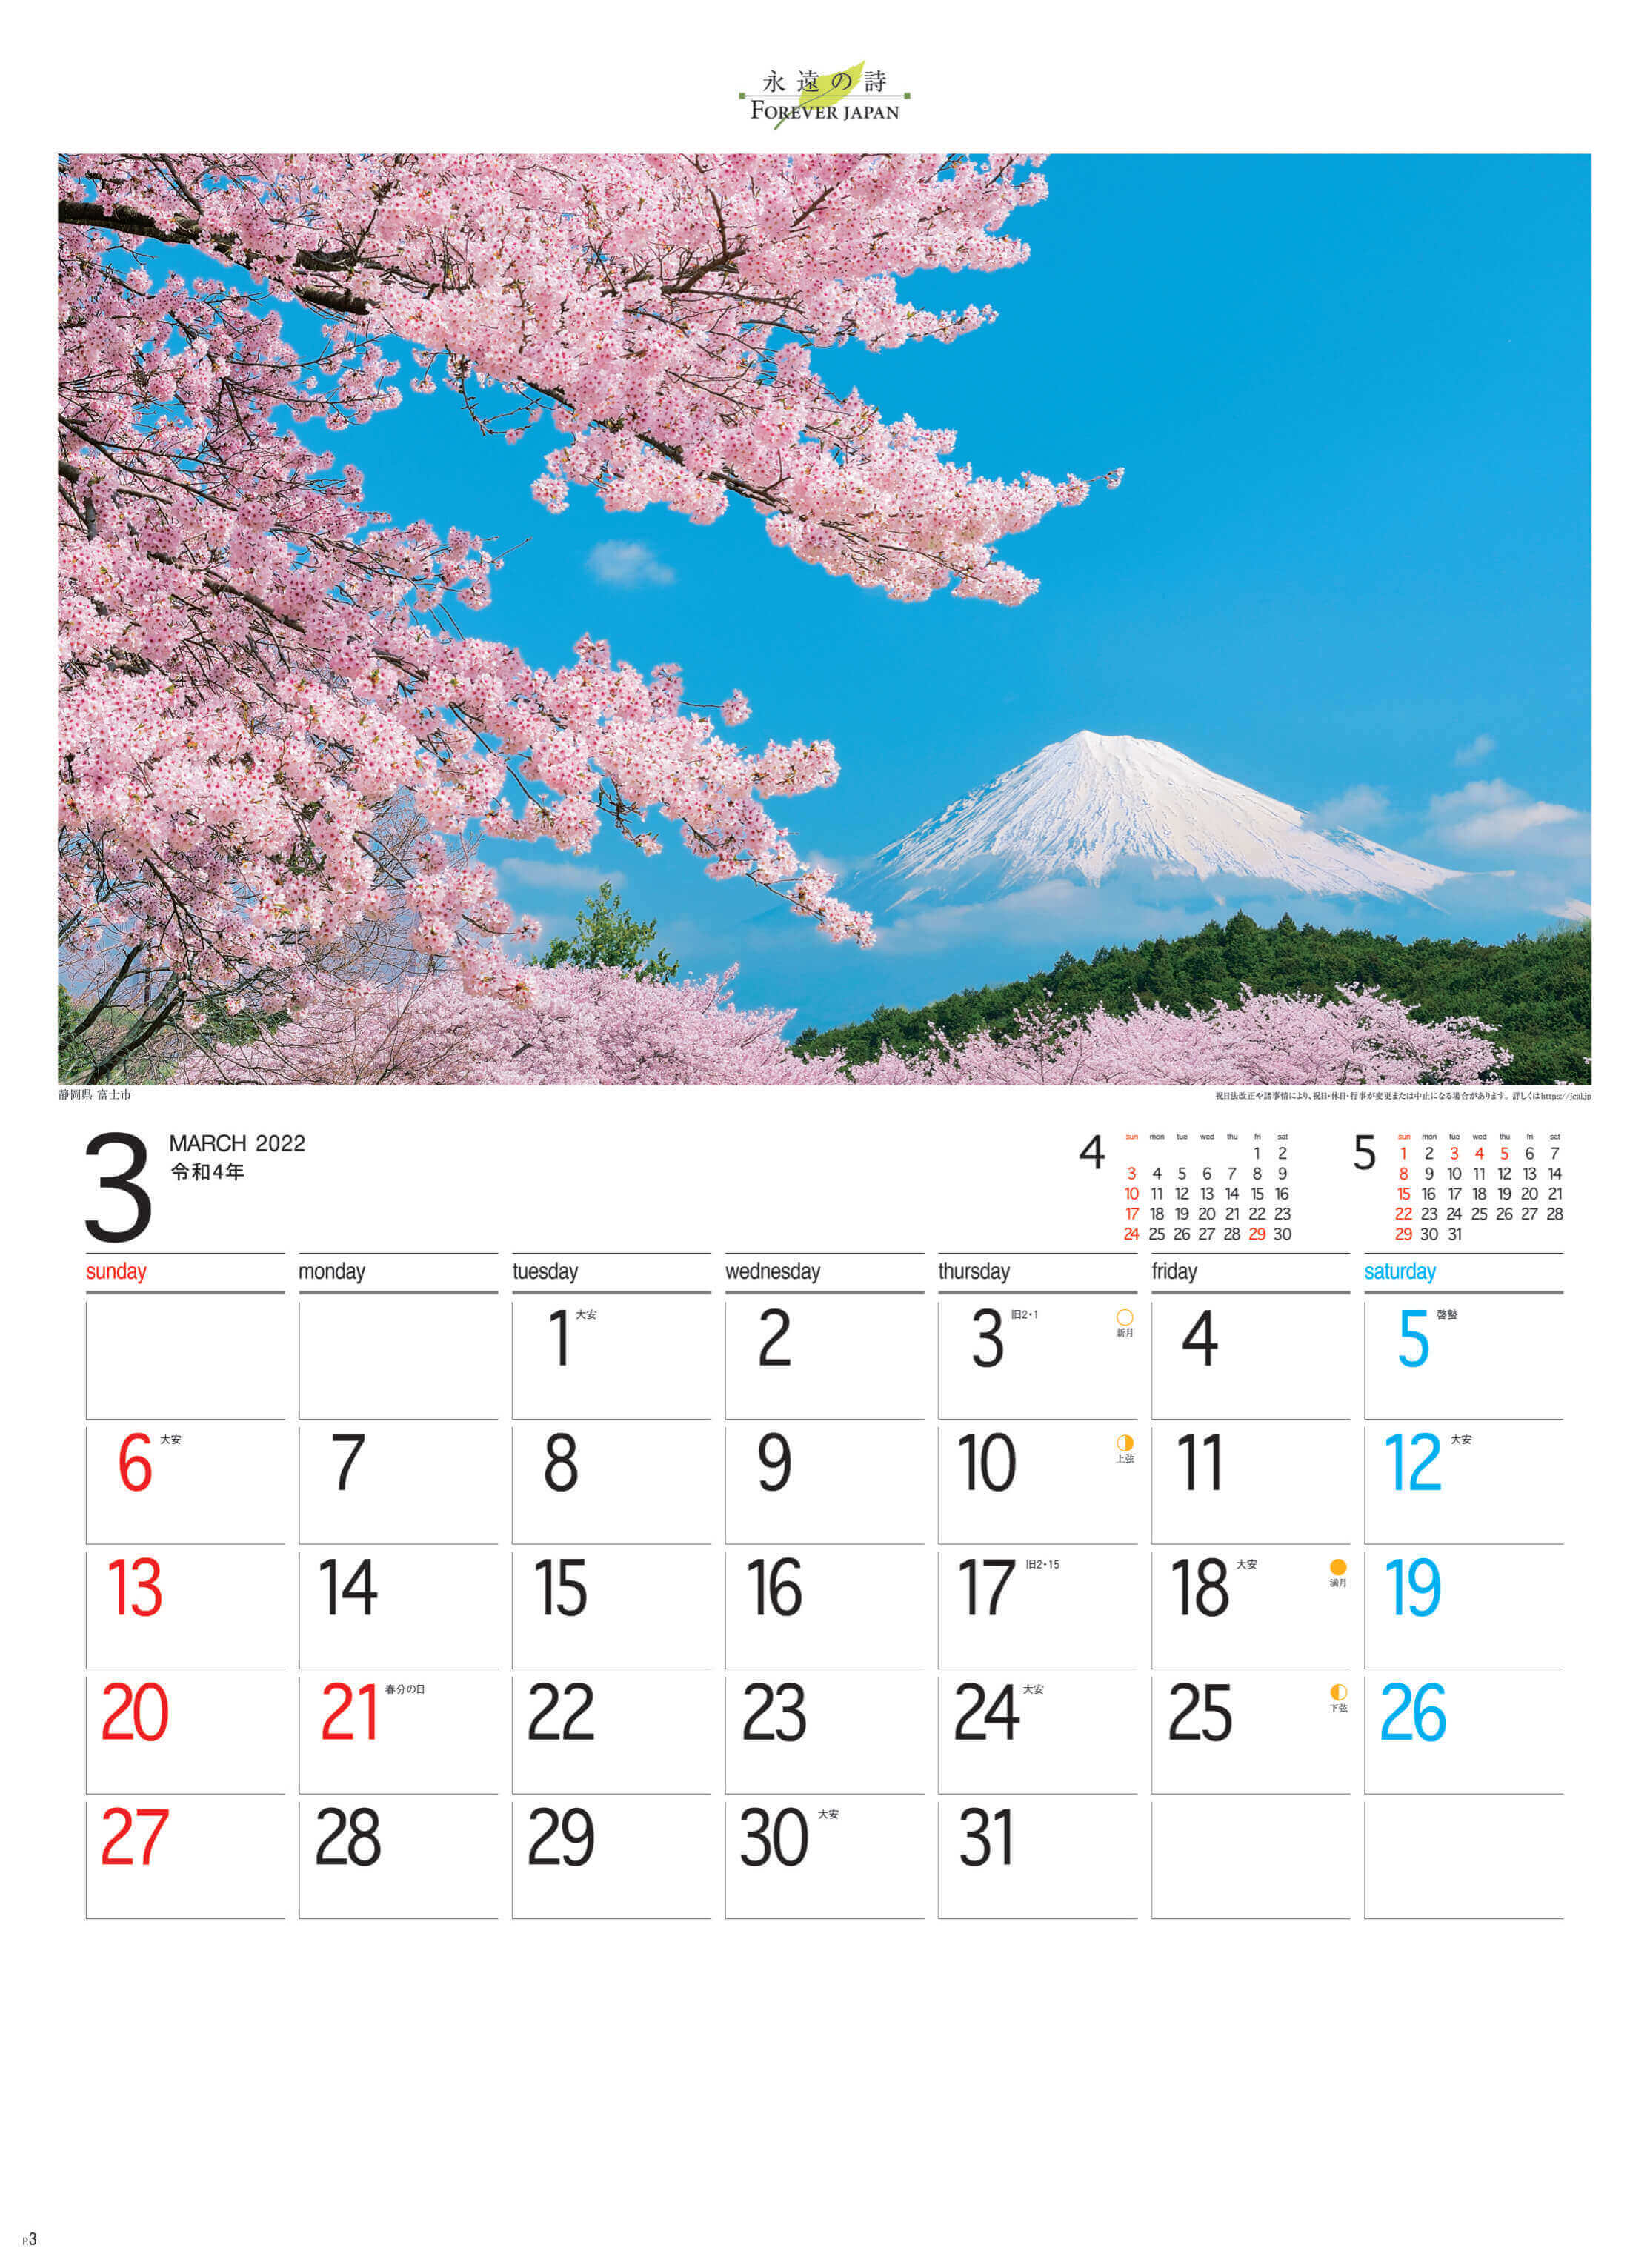 3月 富士市(静岡) フォーエバージャパン 2022年カレンダーの画像